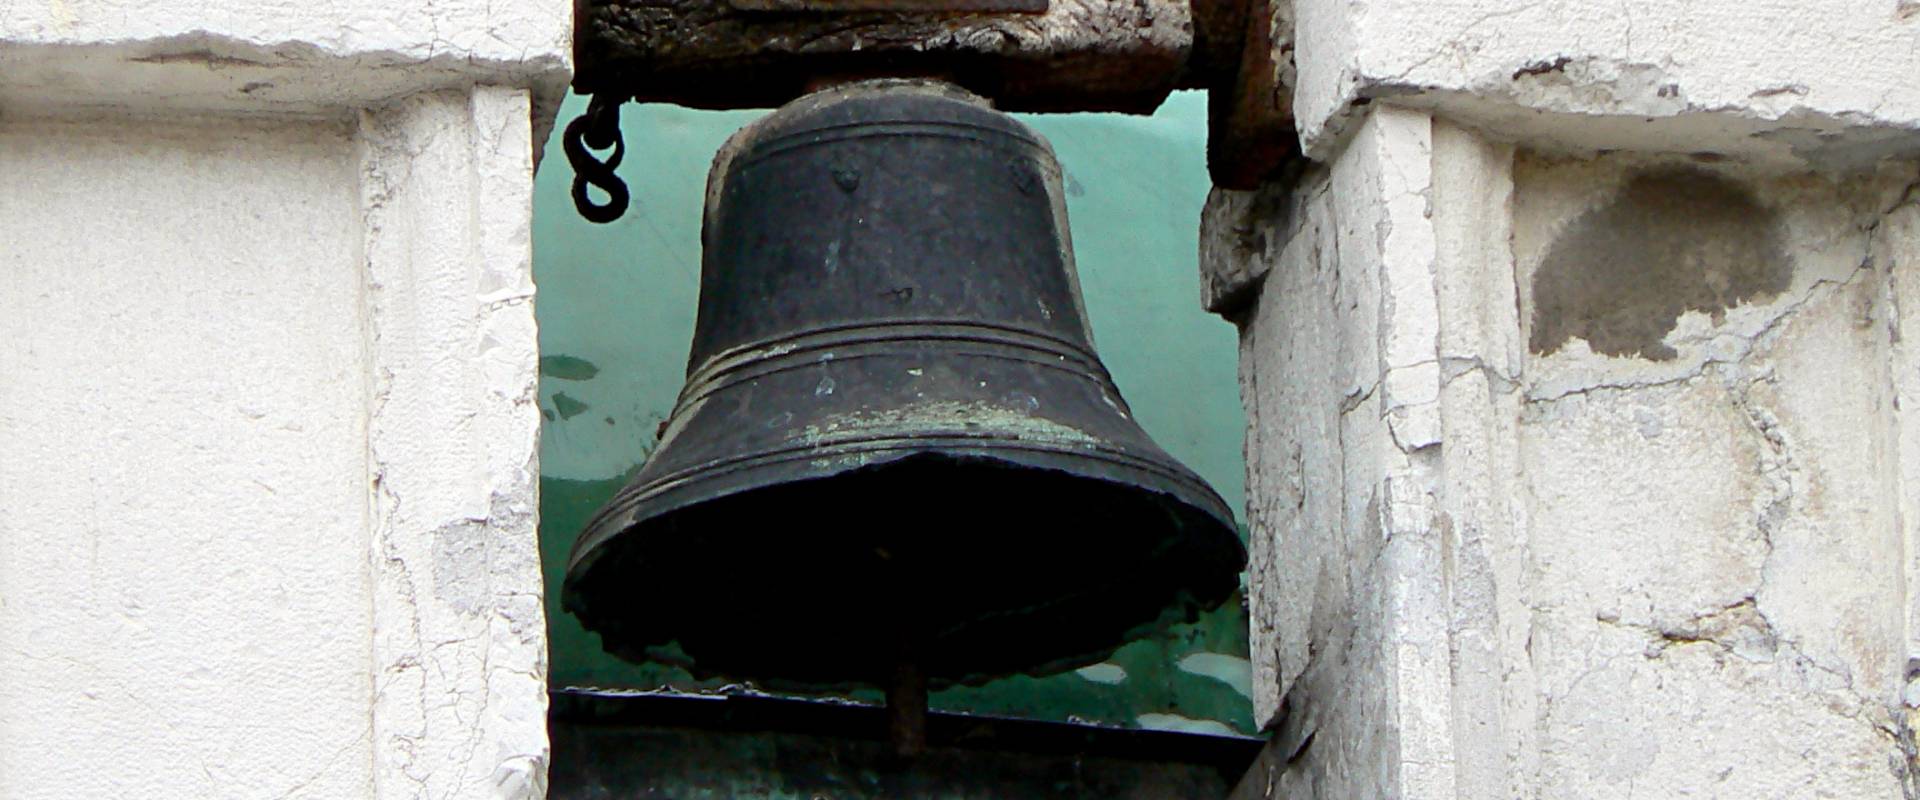 Rimini tempietto Sant Antonio campana foto di Paperoastro